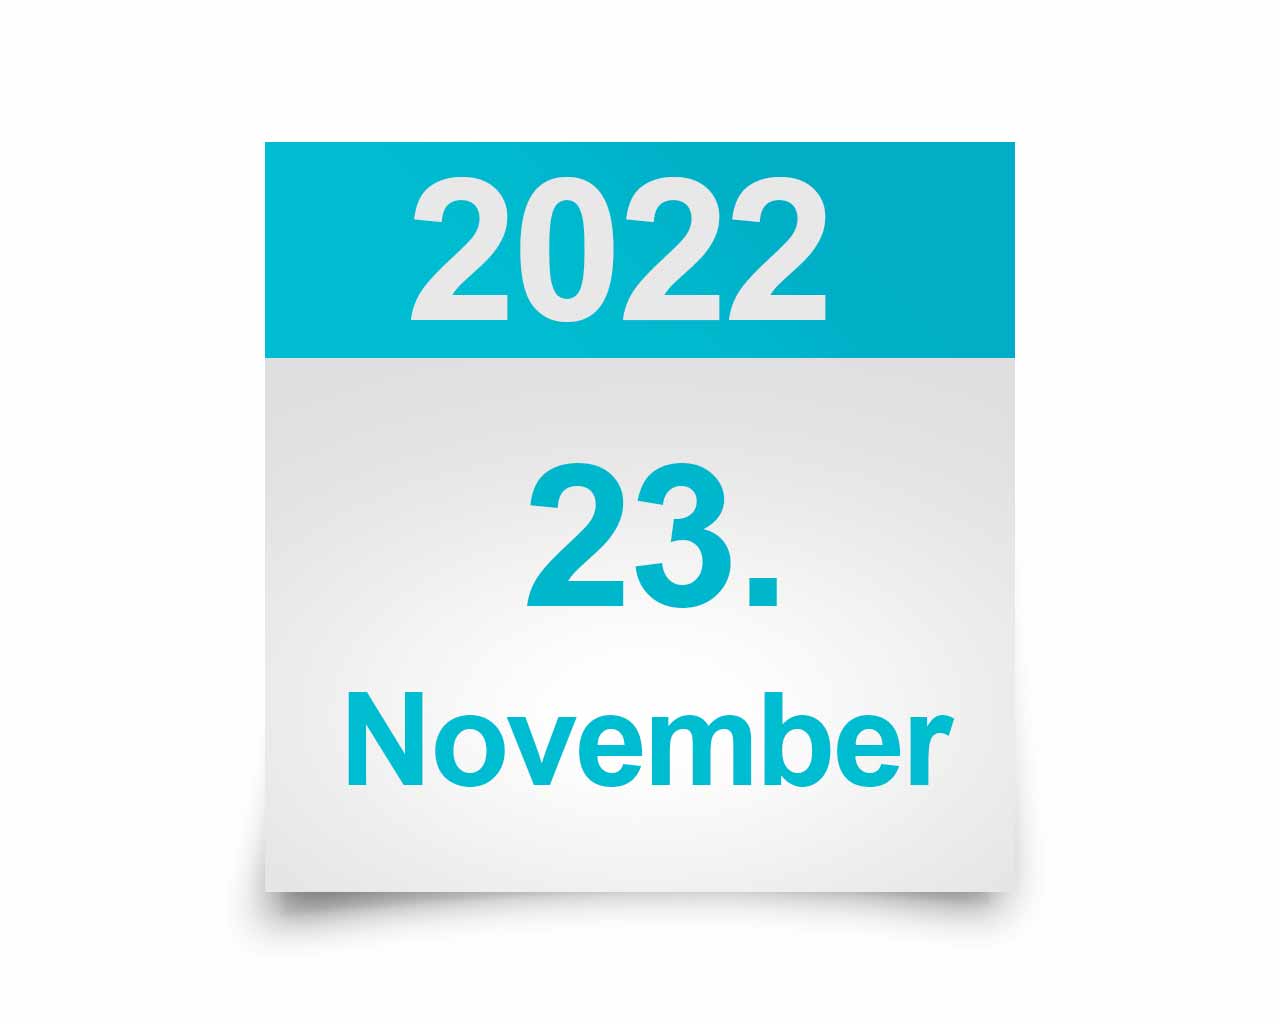 Jahresversammlung 2022